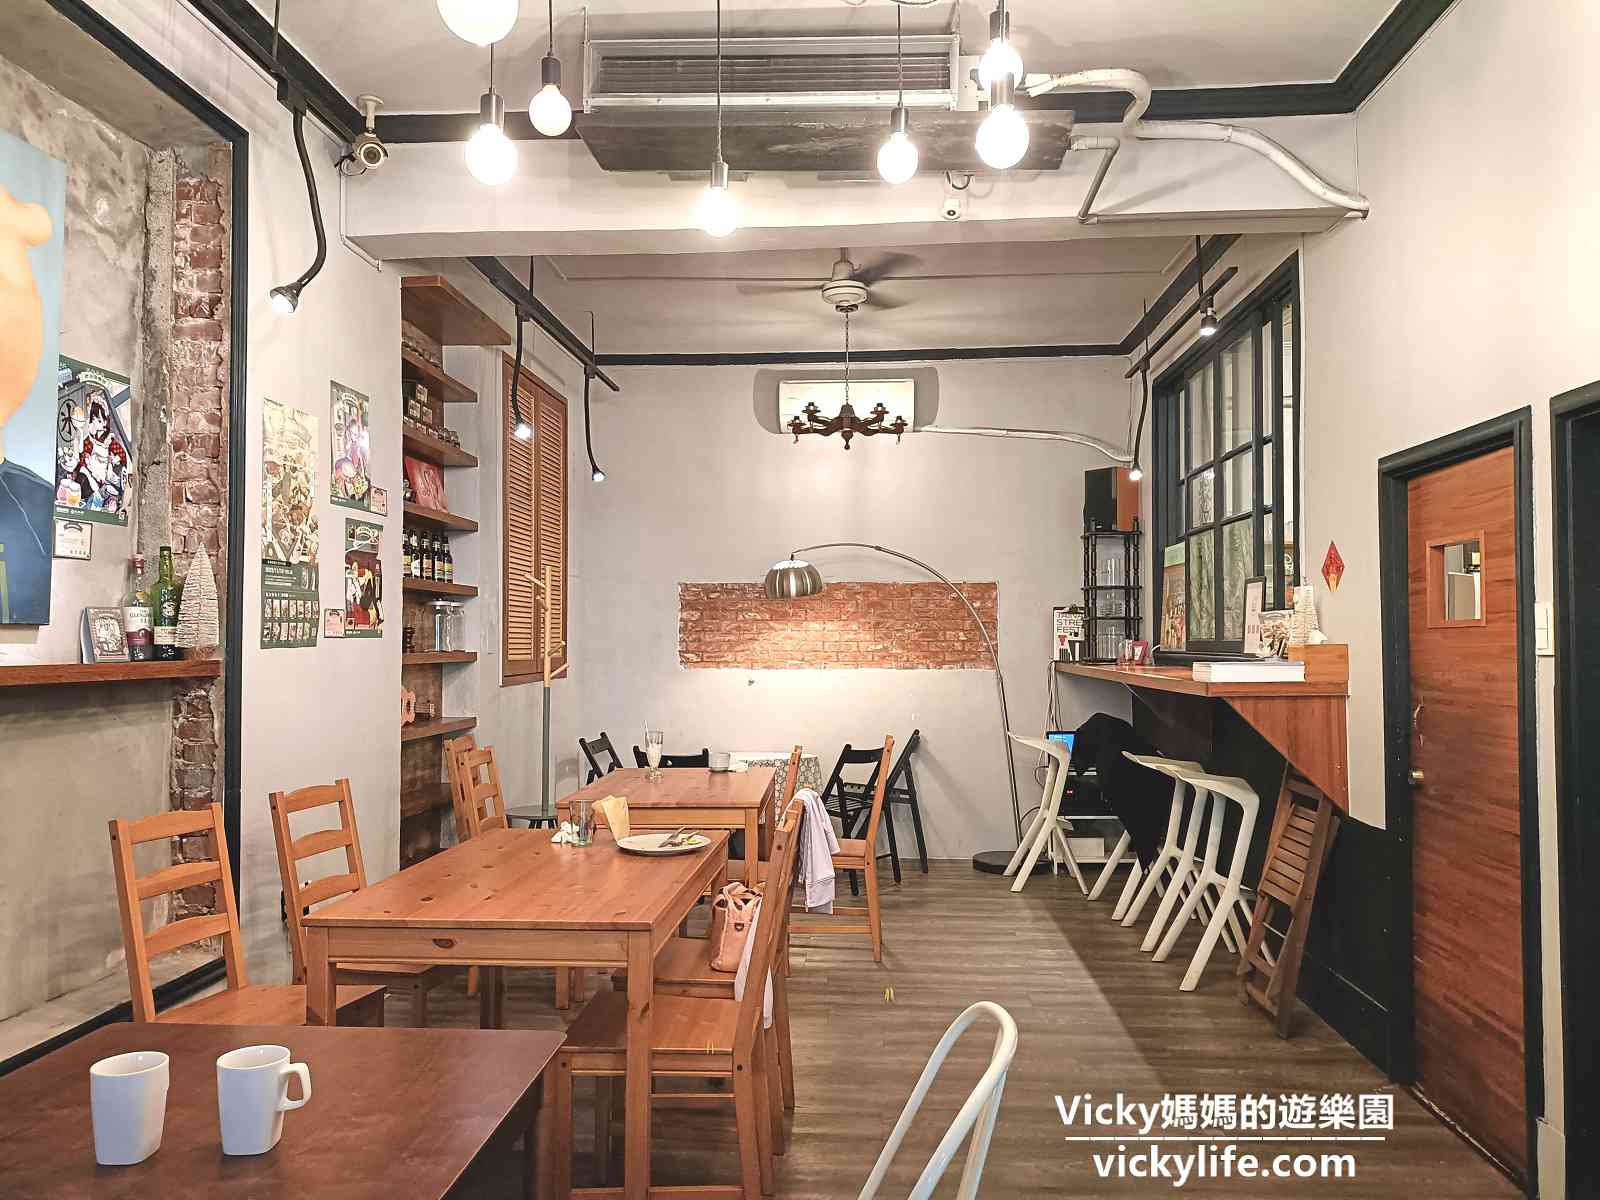 台南早午餐︱Mumu小客廳(菜單)：在中西區巷弄內的蒂芬尼藍洋樓品嘗早午餐真享受